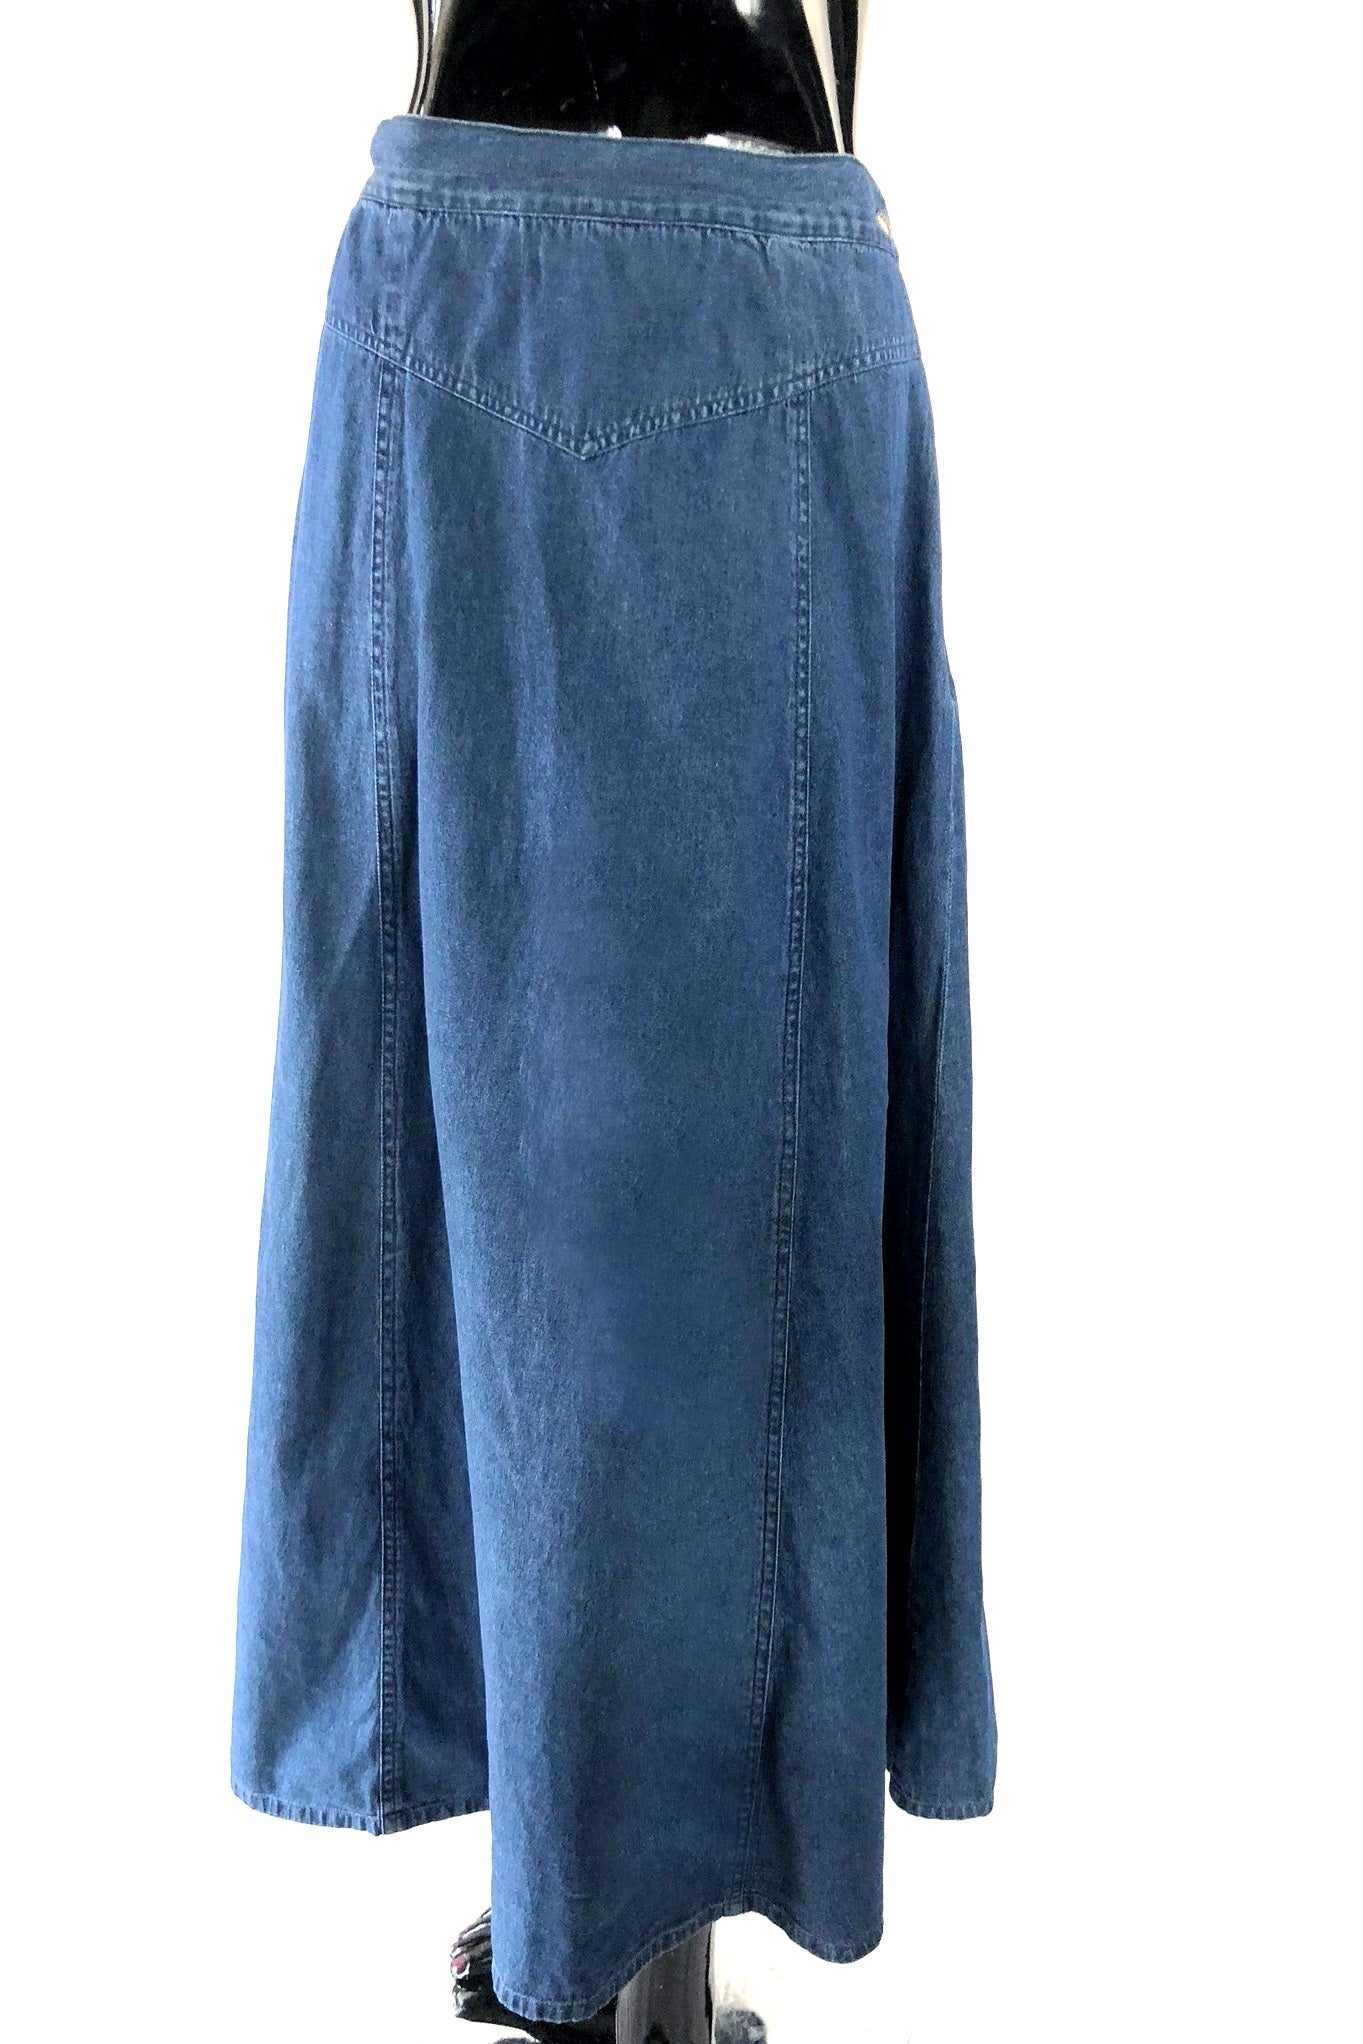 Vintage Damsel in Denim Skirt